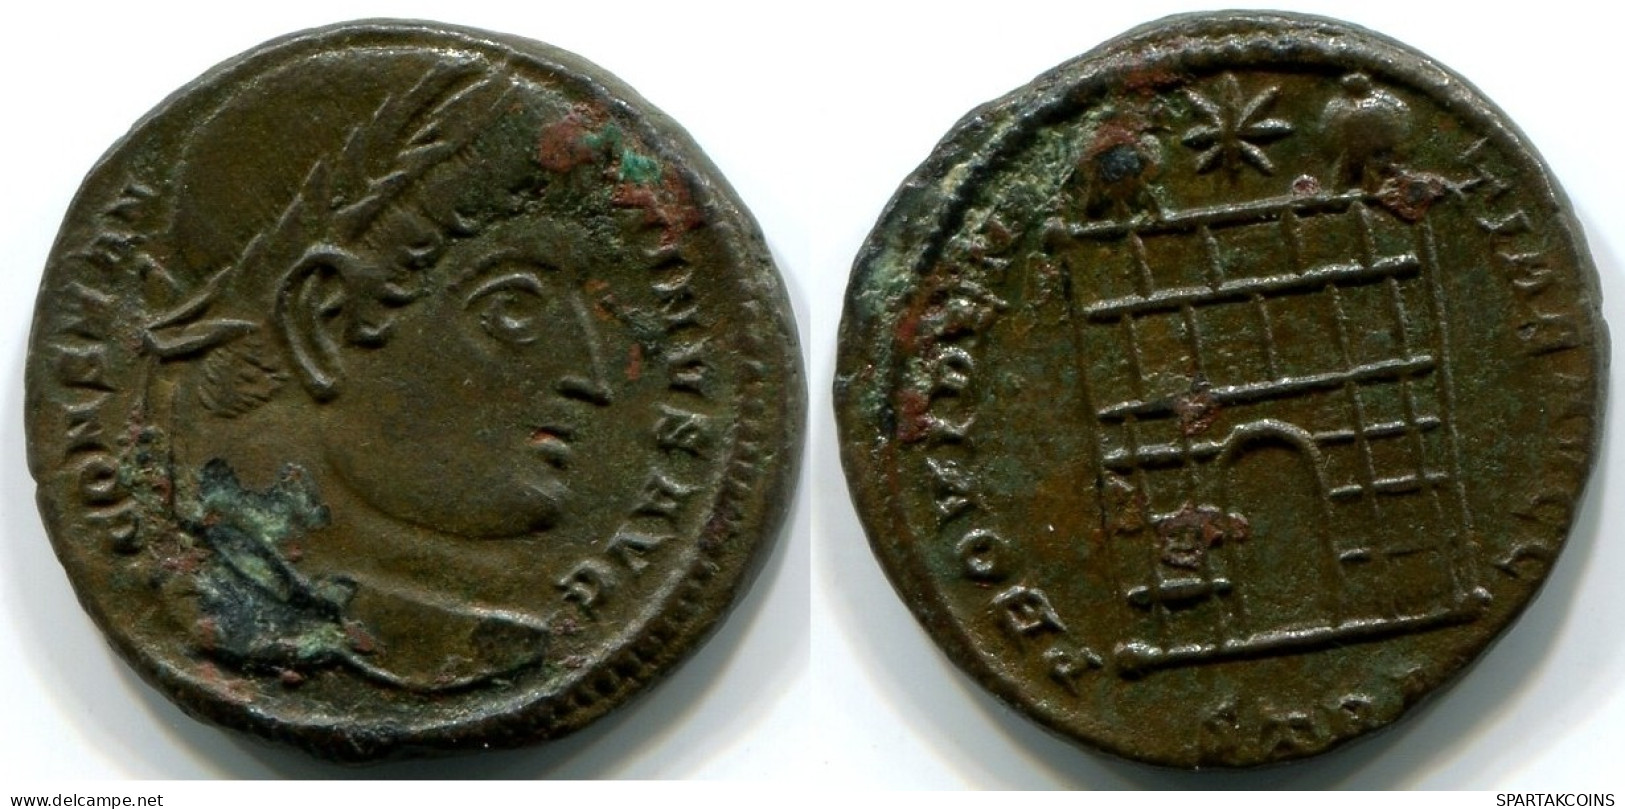 CONSTANTINE I Trier Mint PTR AD 325-326 PROVIDENTIA AVGG Campgate #ANC12453.15.D.A - L'Empire Chrétien (307 à 363)